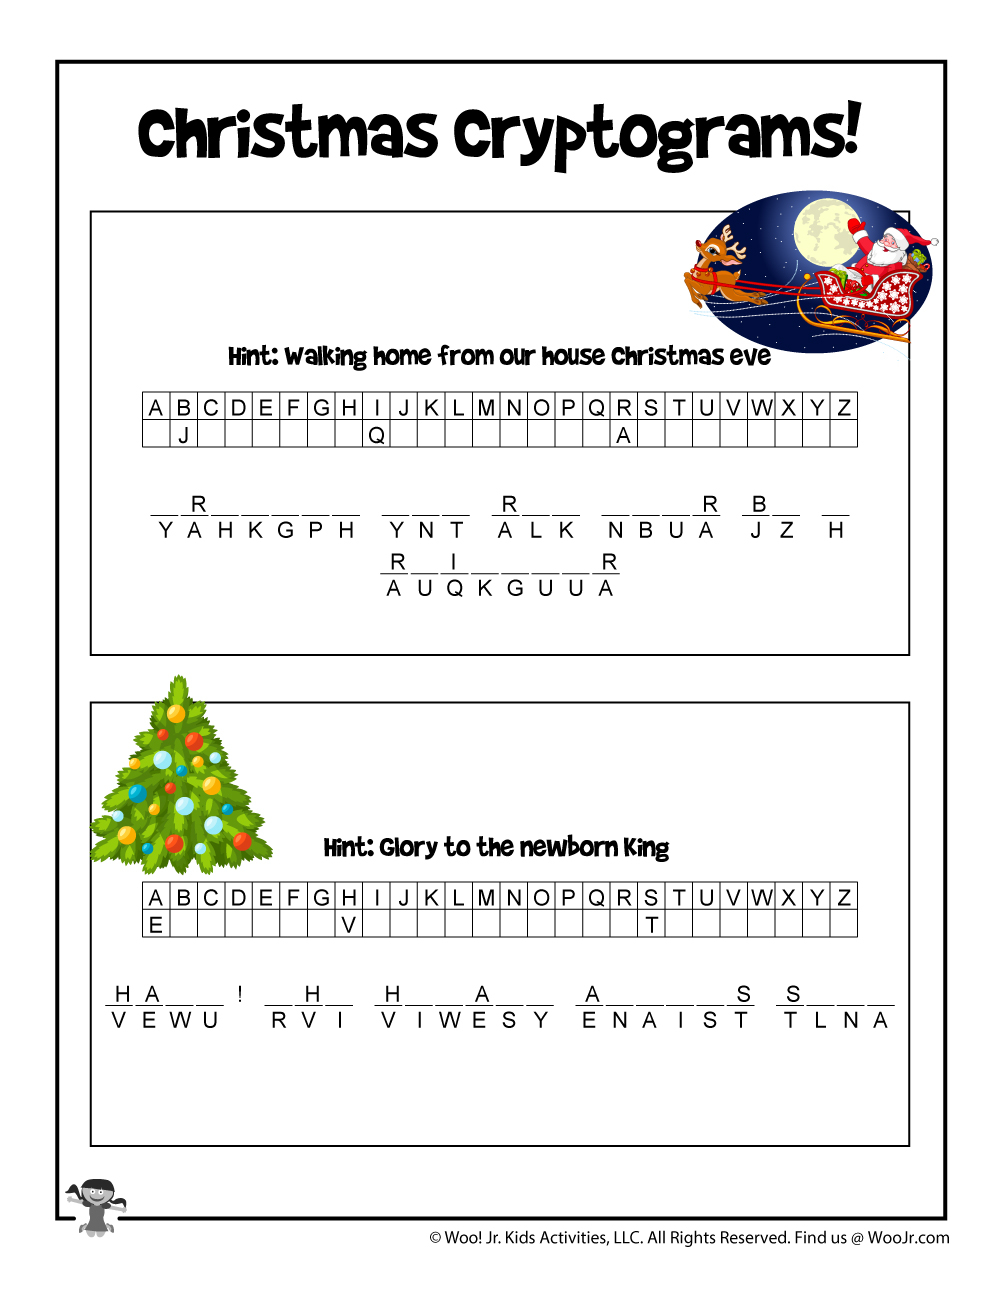 Christmas Secret Code Puzzle | Woo! Jr. Kids Activities